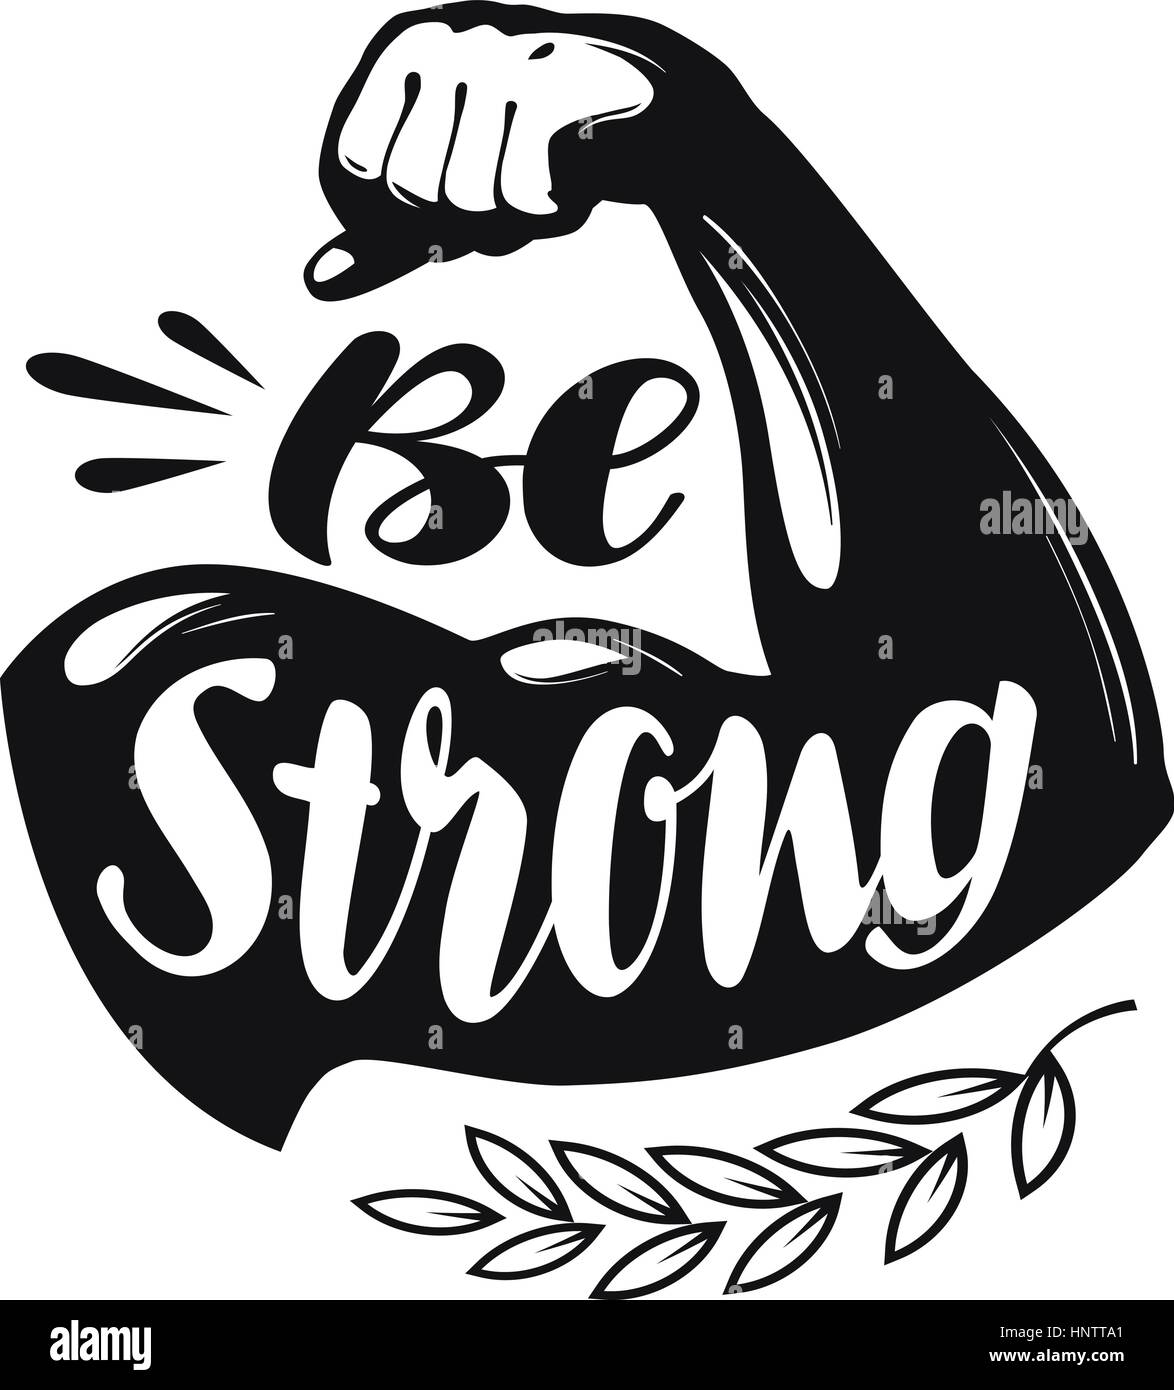 Seien Sie stark, Schriftzug. Sport Fitness-Studio, Fitness-Label. Vektor-illustration Stock Vektor